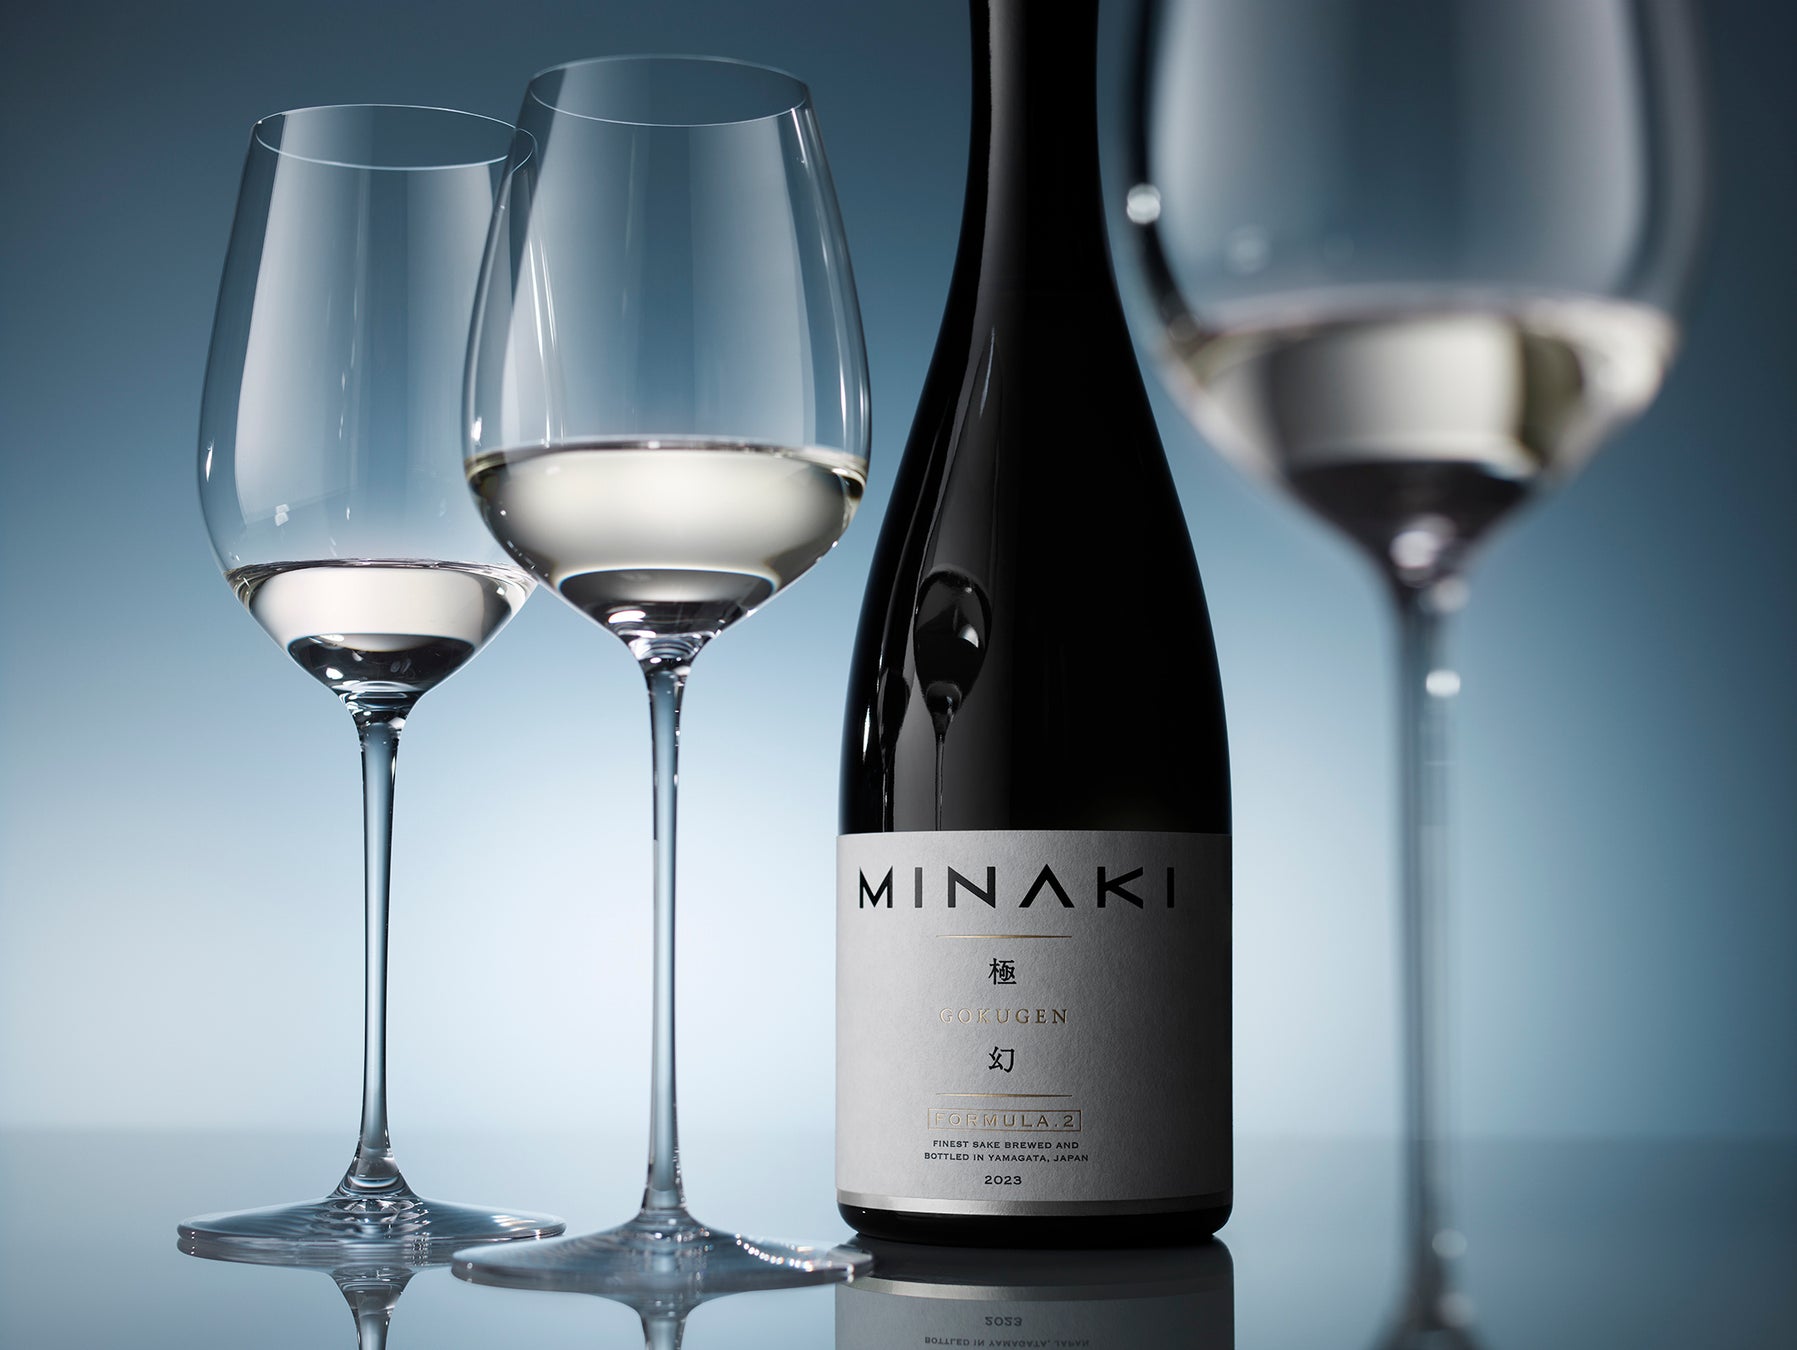 2023年度全米日本酒歓評会にて、ラグジュアリー日本酒ブランド〝MINAKI〟の「極幻 FORMULA.2」が金賞、「極幻」が銀賞を受賞